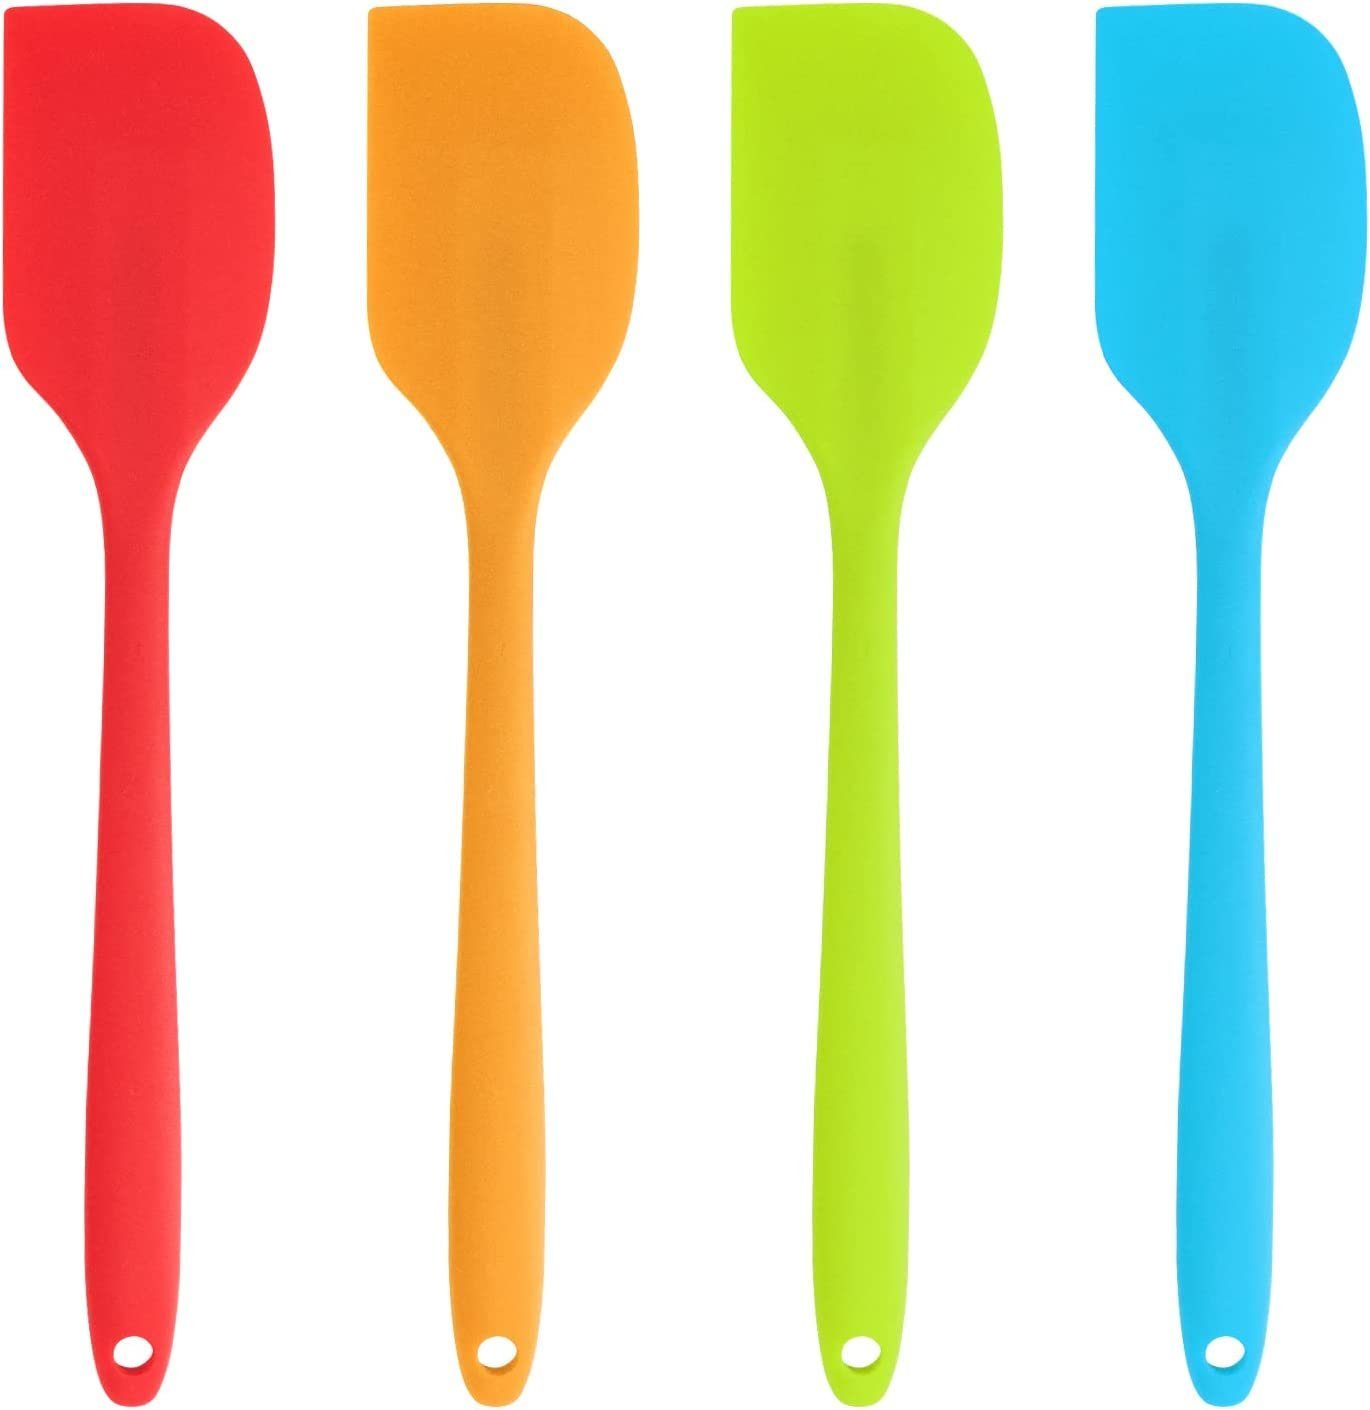 JOEJI’S KITCHEN Küchenschaufel Set mit 4 Silikonspateln zum Kochen, Teigschaber, Silikon zum Backen in verschiedenen Farben, großer Antihaft-Silikonspatel in Orange/Blau/Grün/Rot